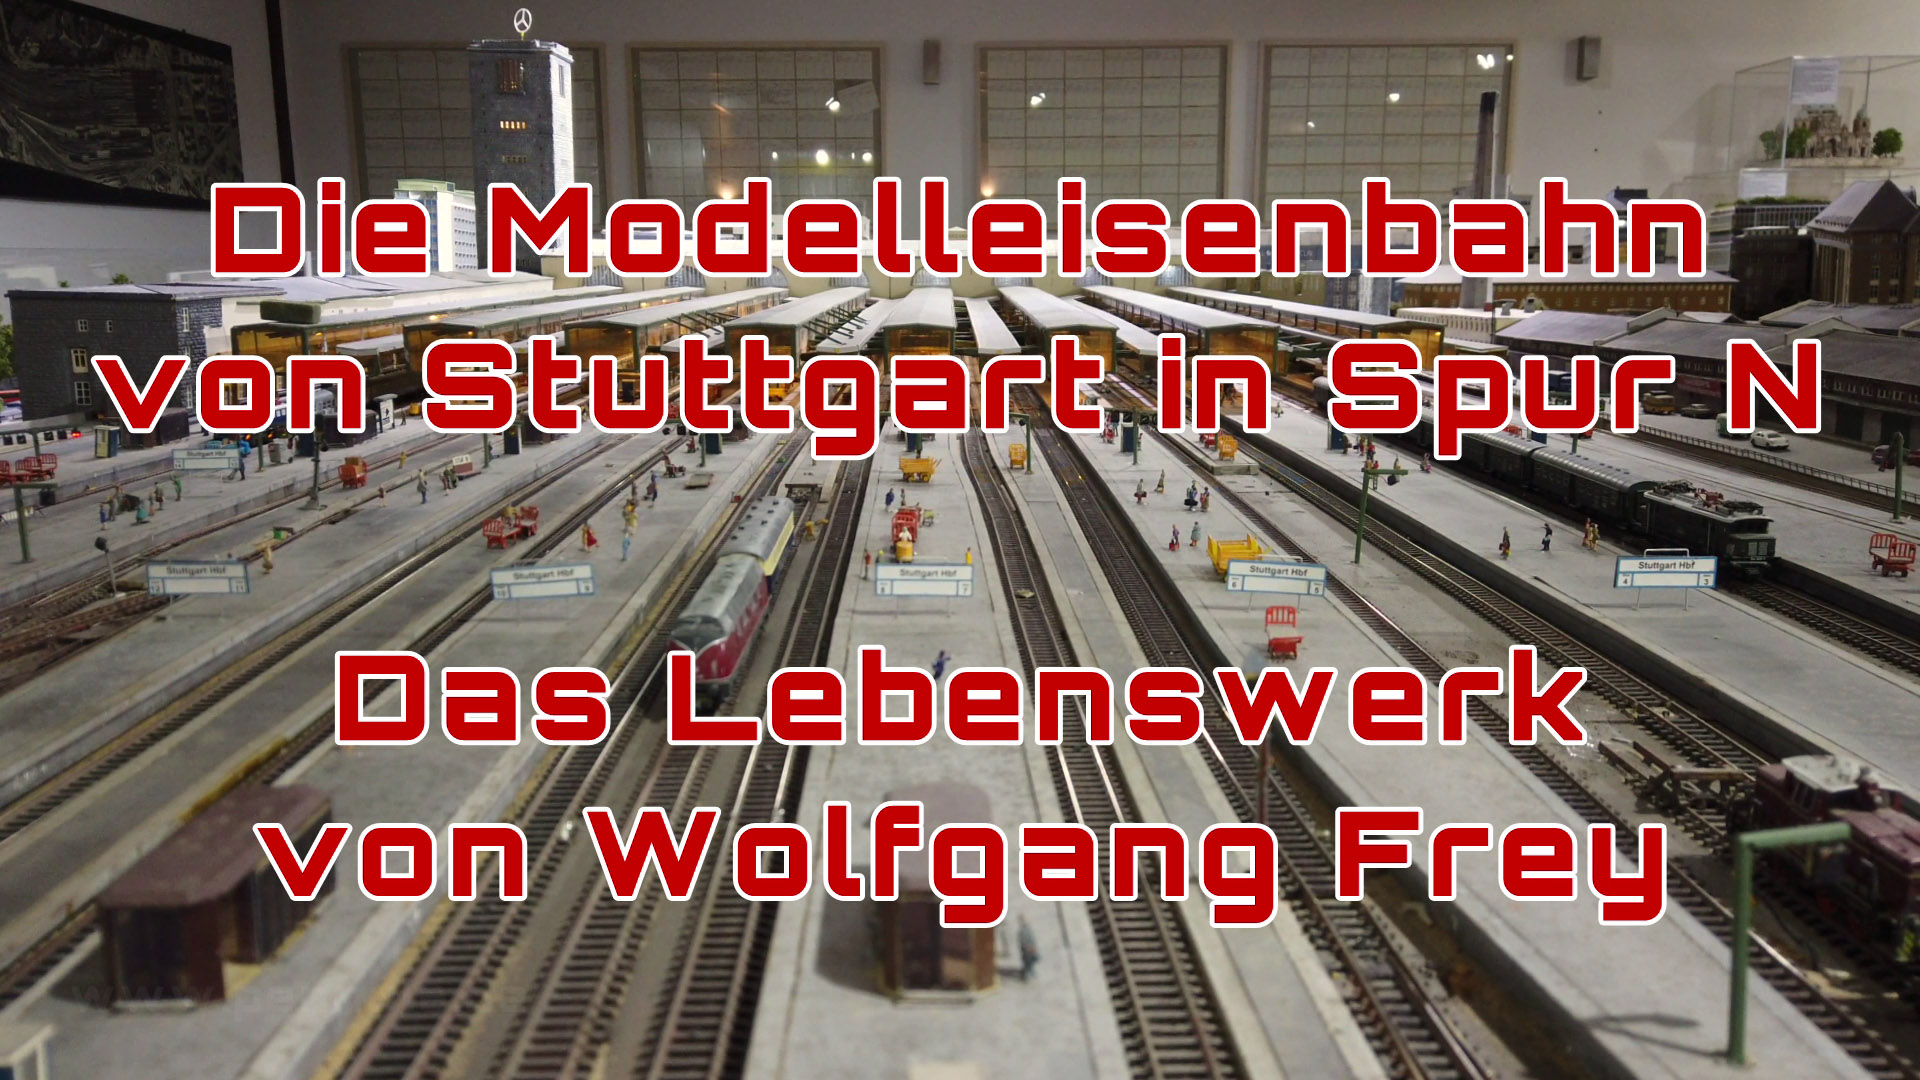 Modelleisenbahn von Stuttgart in Spur N - Lebenswerk von Wolfgang Frey - Stellwerk S Herrenberg